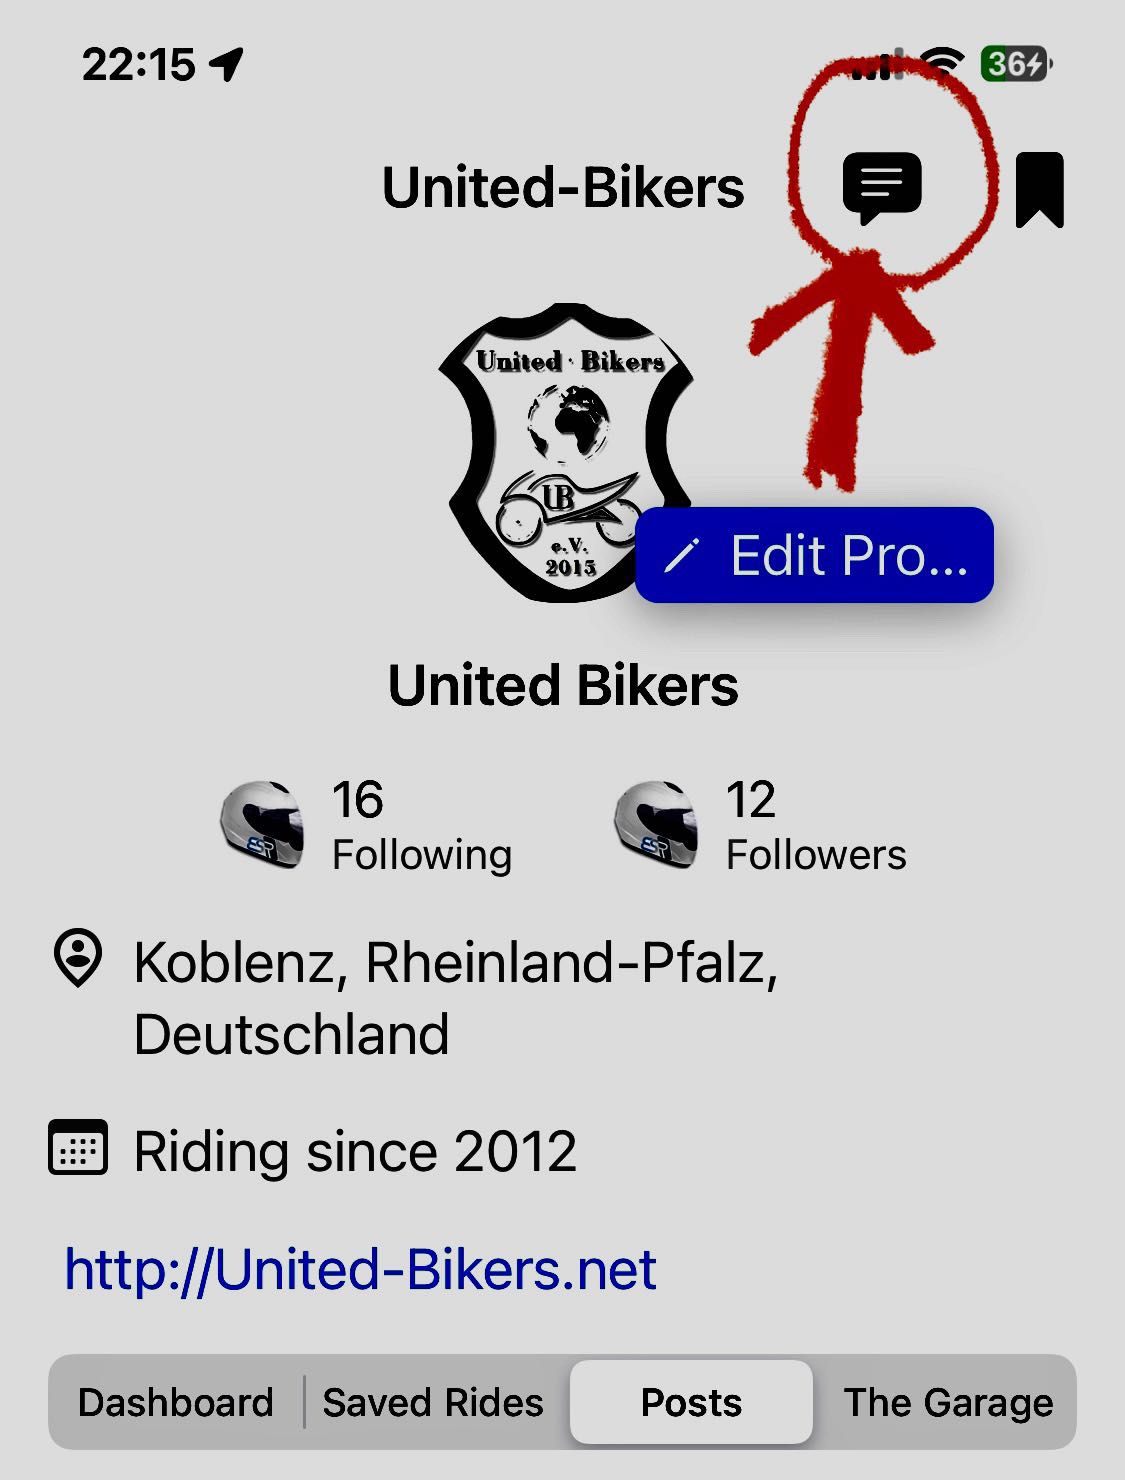 United-Bikers's Image